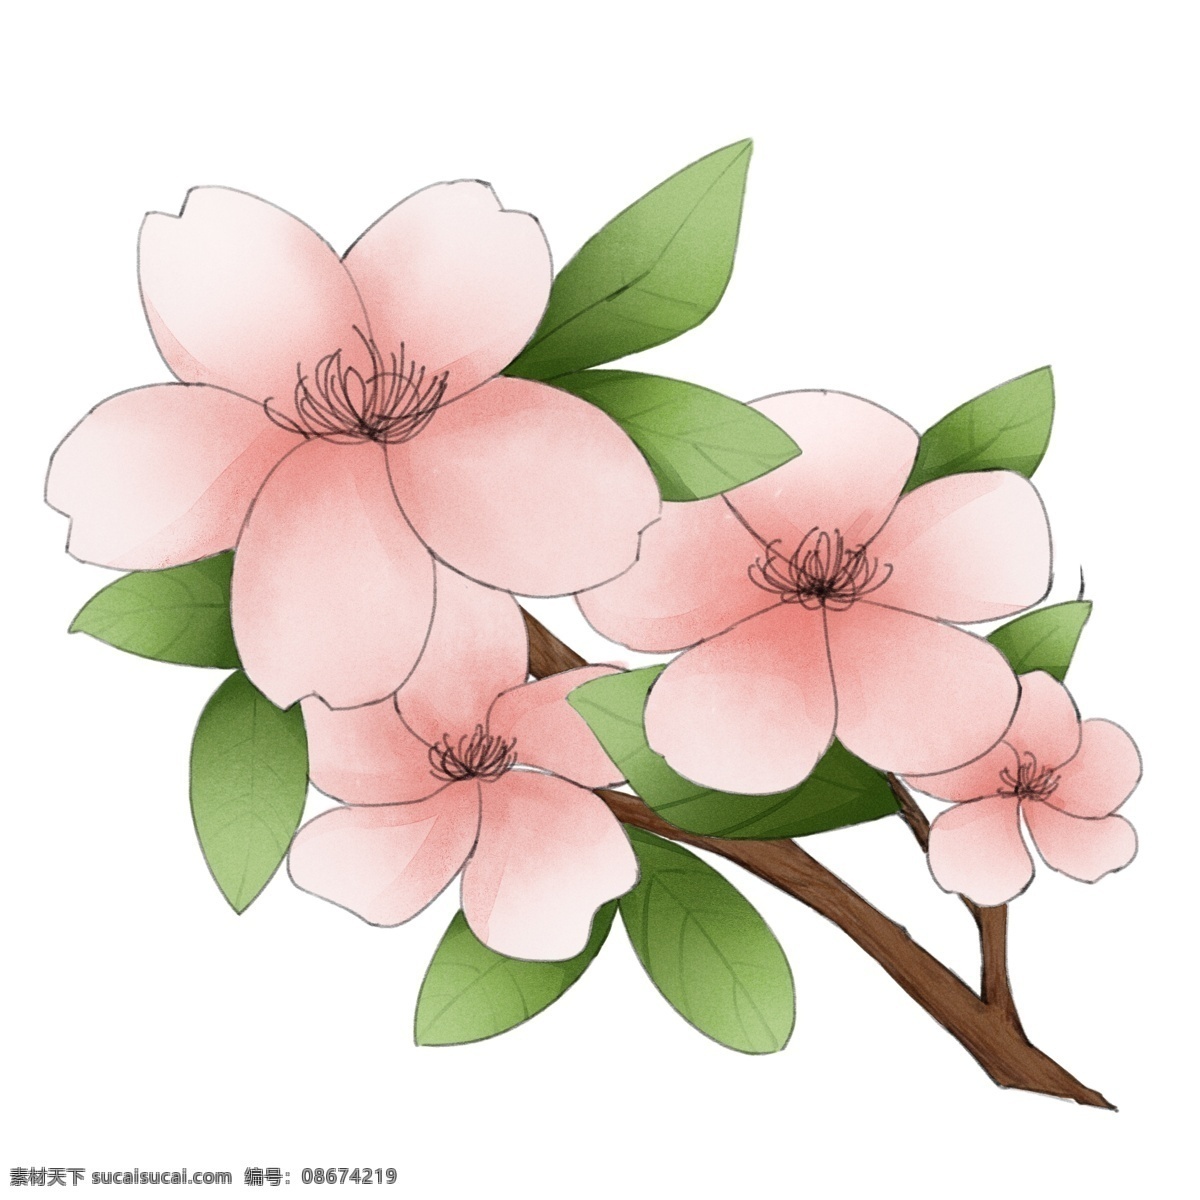 盛开 樱花 花朵 插画 粉色花朵 鲜花 花卉 植物 红色樱花 盛开的樱花 黄色花蕊 粉色花瓣